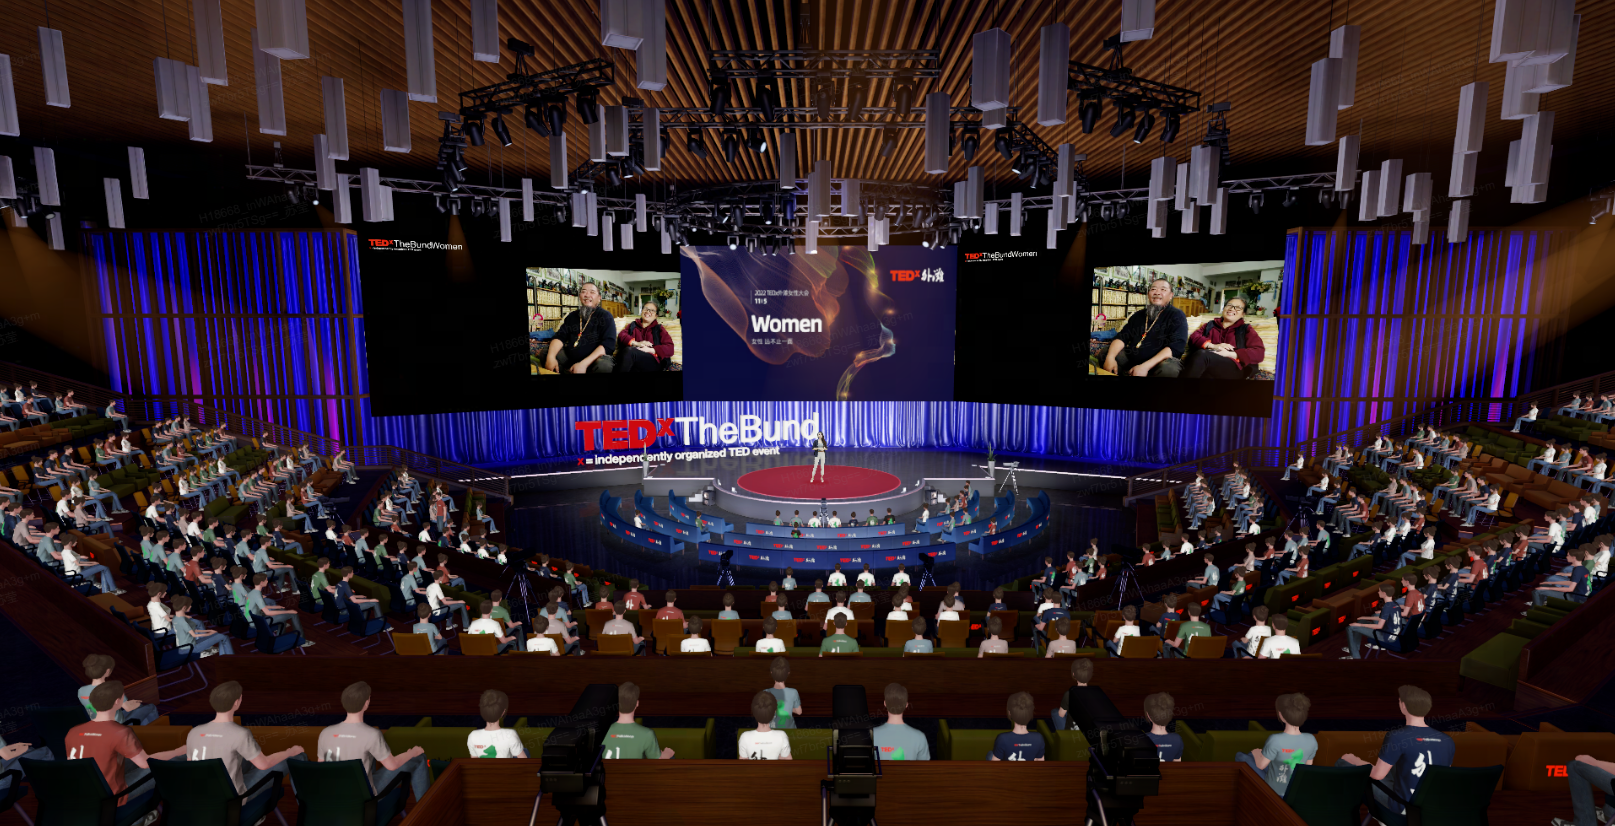 这是一张TEDx活动的图片，讲者站在舞台上，观众认真聆听，会场氛围正式，屏幕显示“Women”字样。